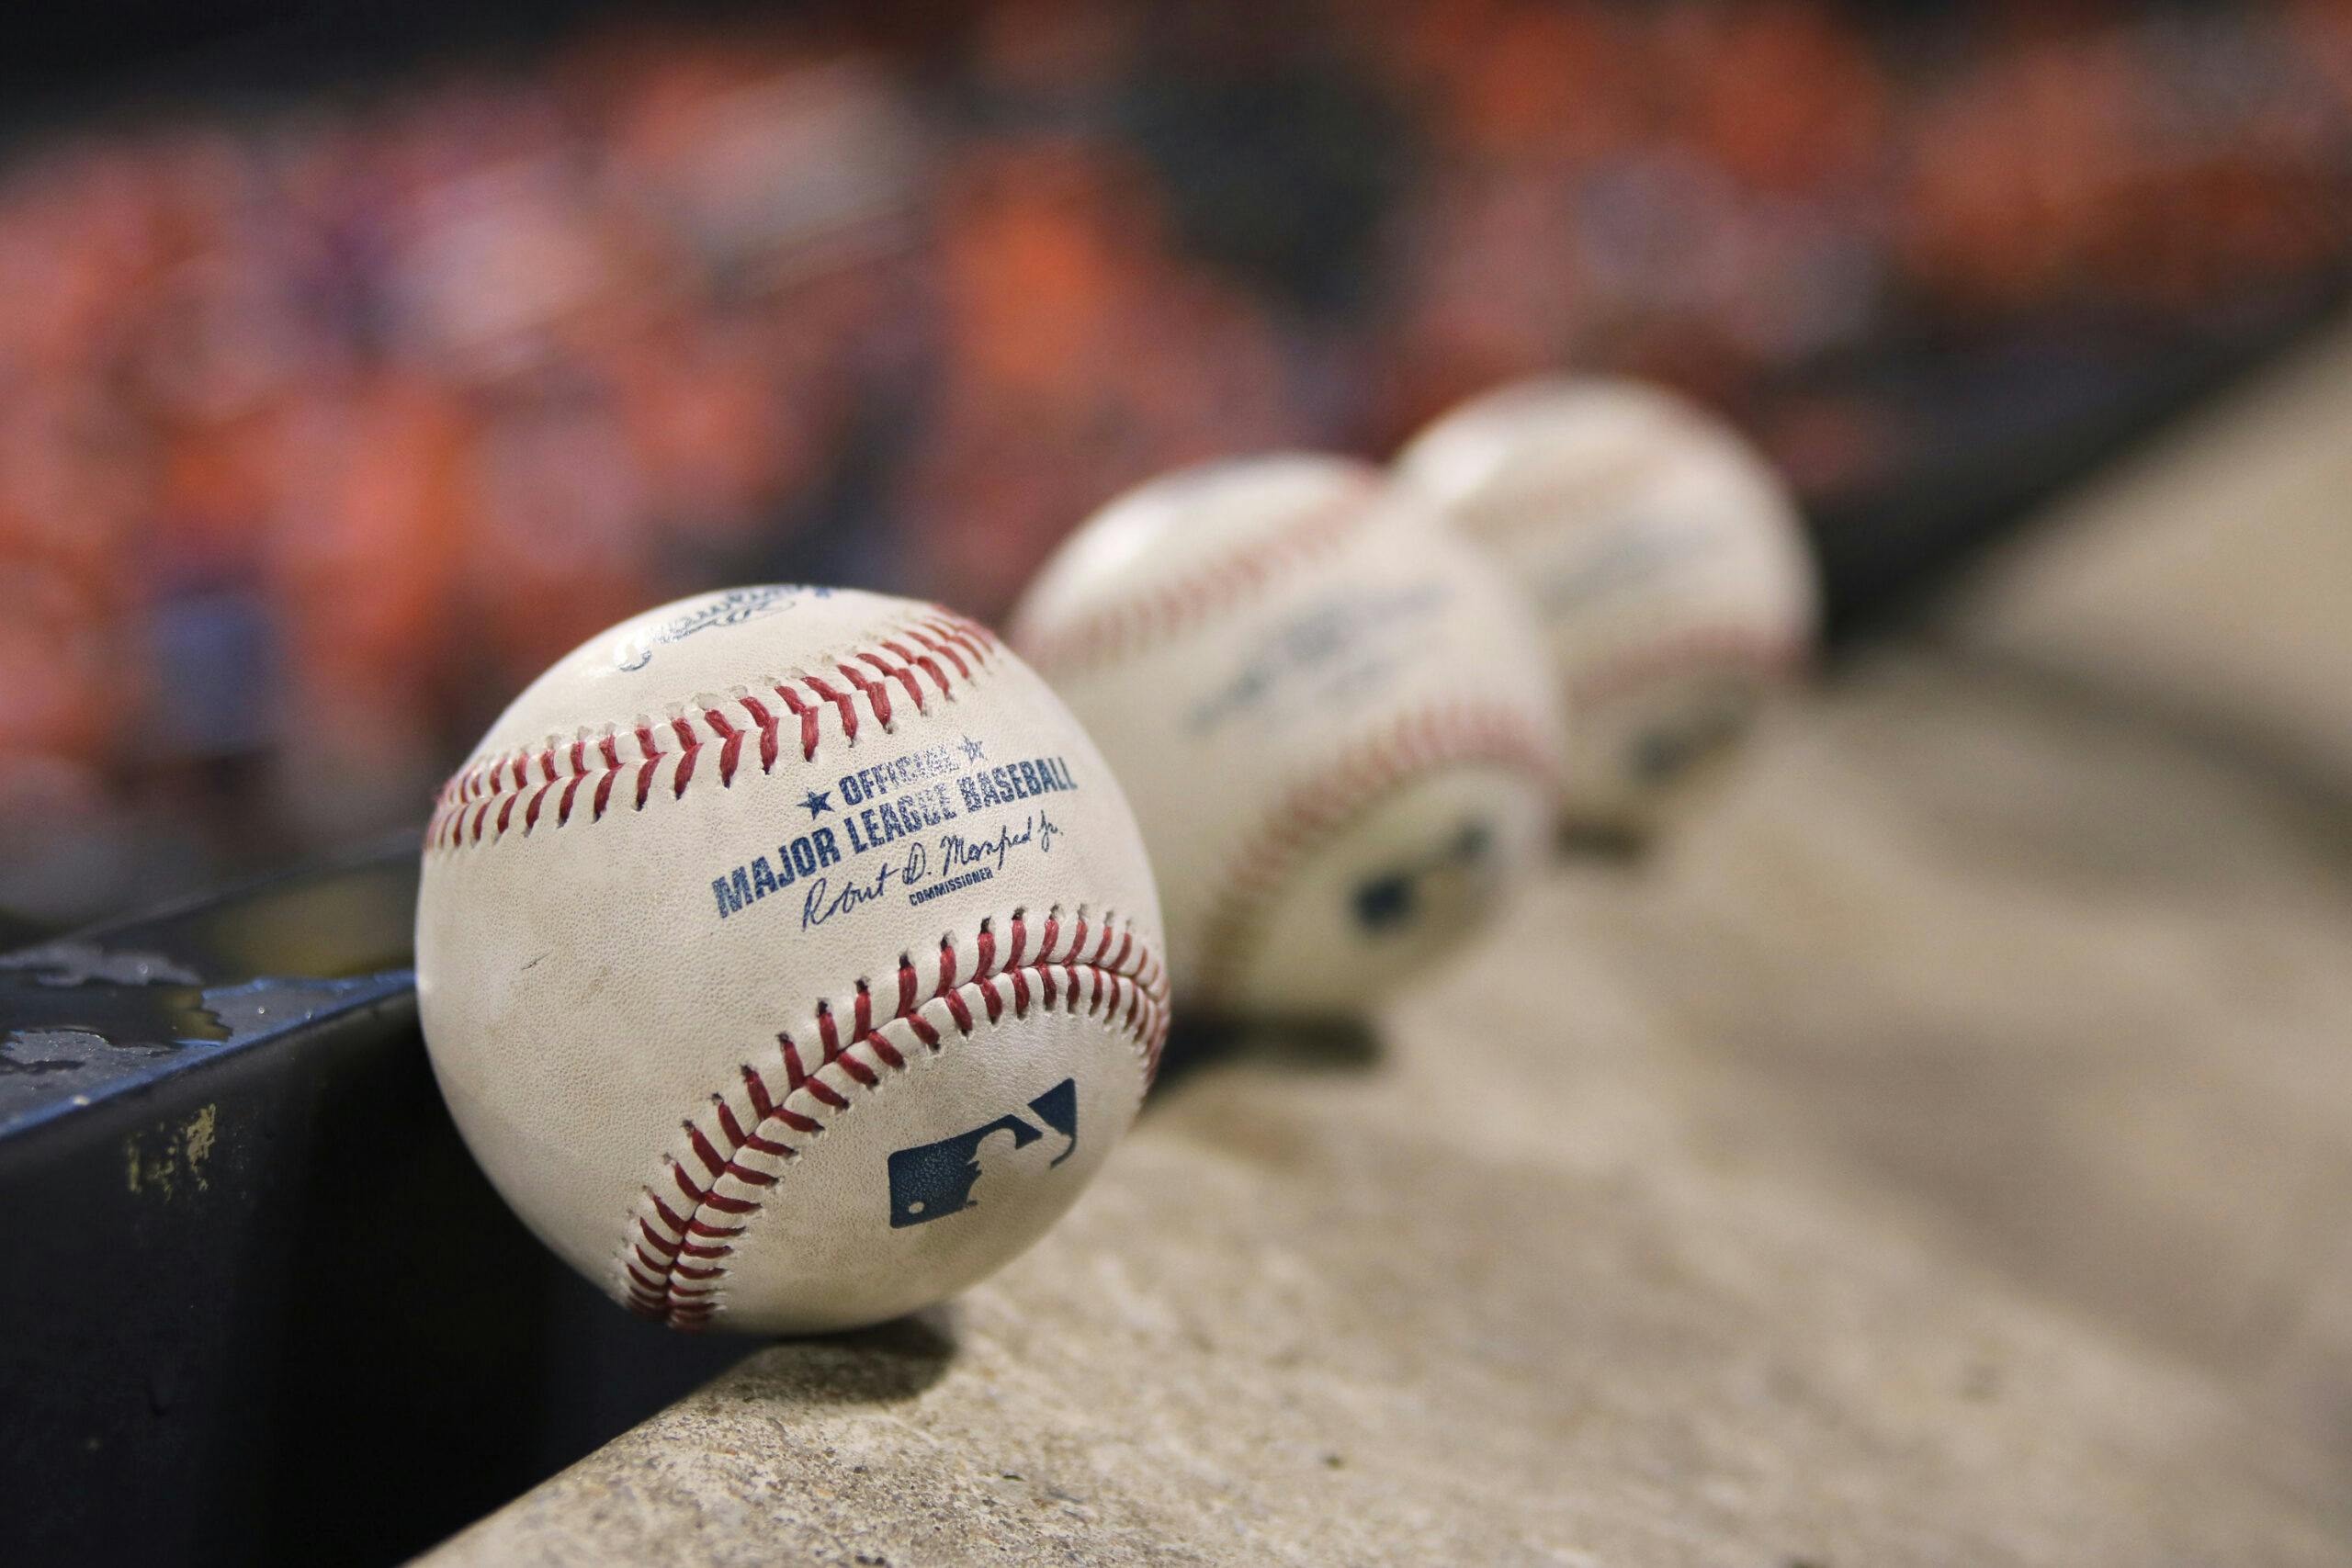 Three official major league baseballs lined up at a baseball game